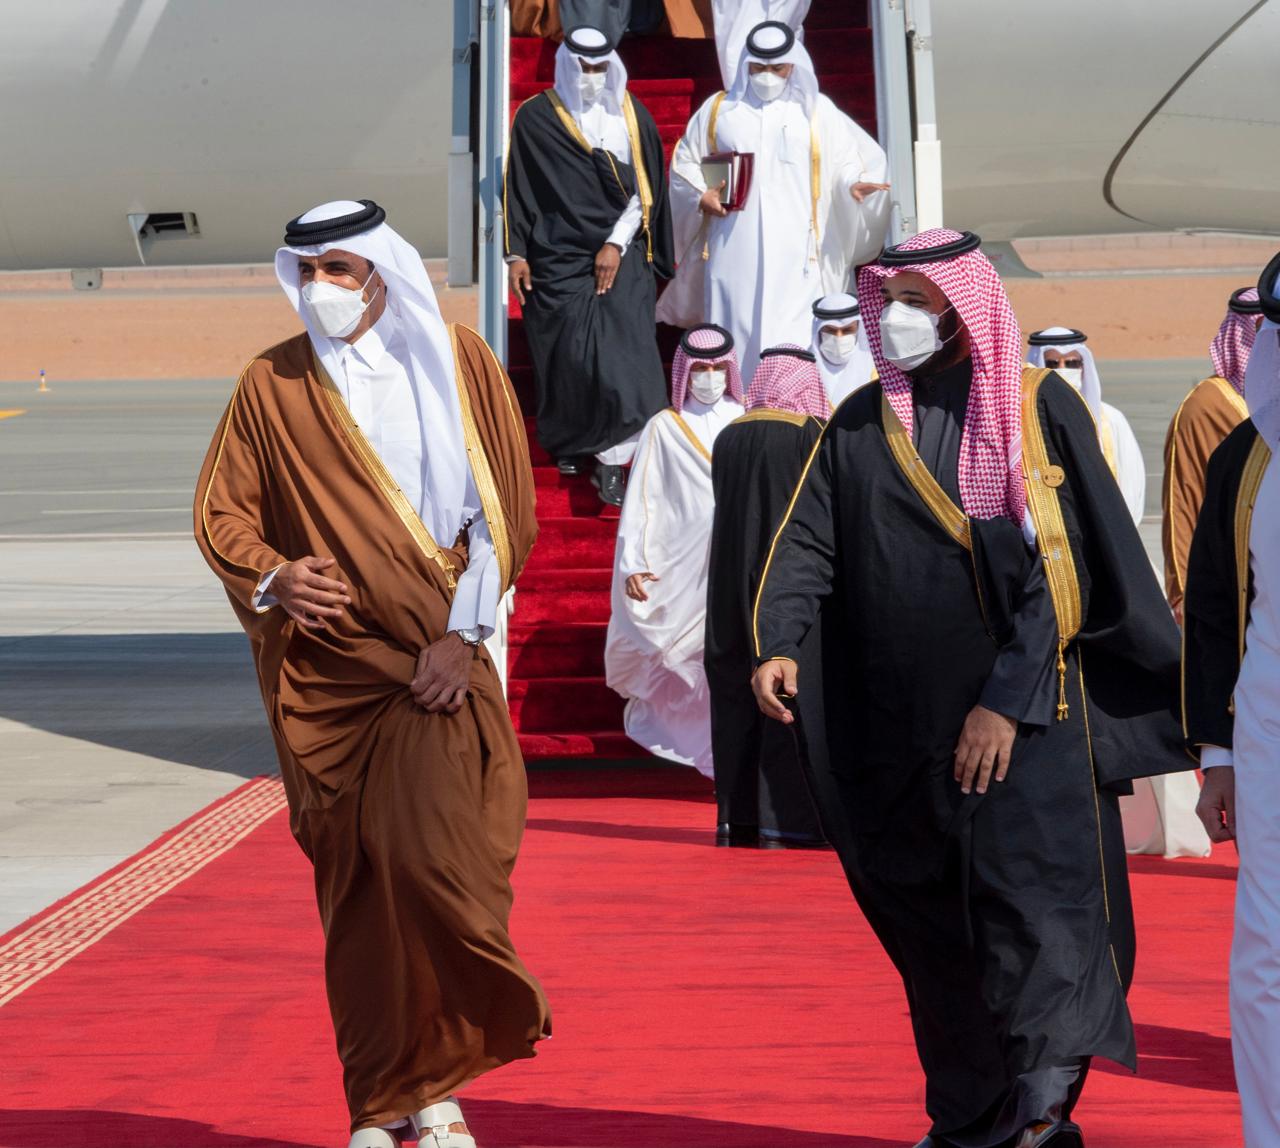 استقبل اليوم الثلاثاء ولي العهد السعودي (محمد بن سلمان) أمير دولة قطر (تميم بن حمد آل ثاني)، وذلك في مطار (العلا) بالسعودية في أول زيارة بين البلدين بعد انقطاع أكثر من ثلاثة أعوام.